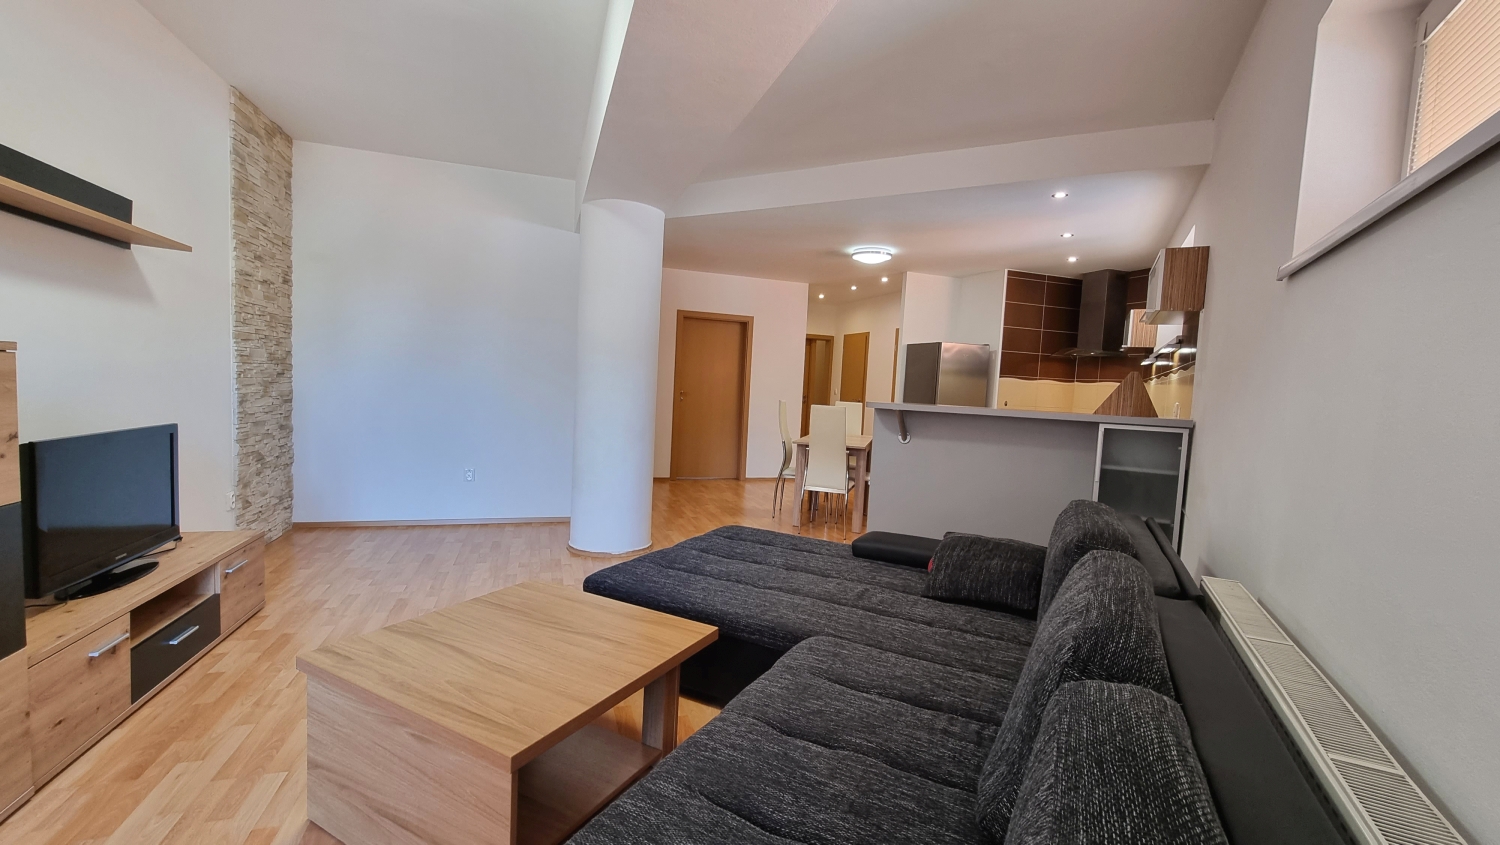 EXKLUZÍVNE! Výnimočný 2-izbový byt s balkónom, výborná lokalita, predaj, Žilina – centrum, Cena: 174.900,- €.